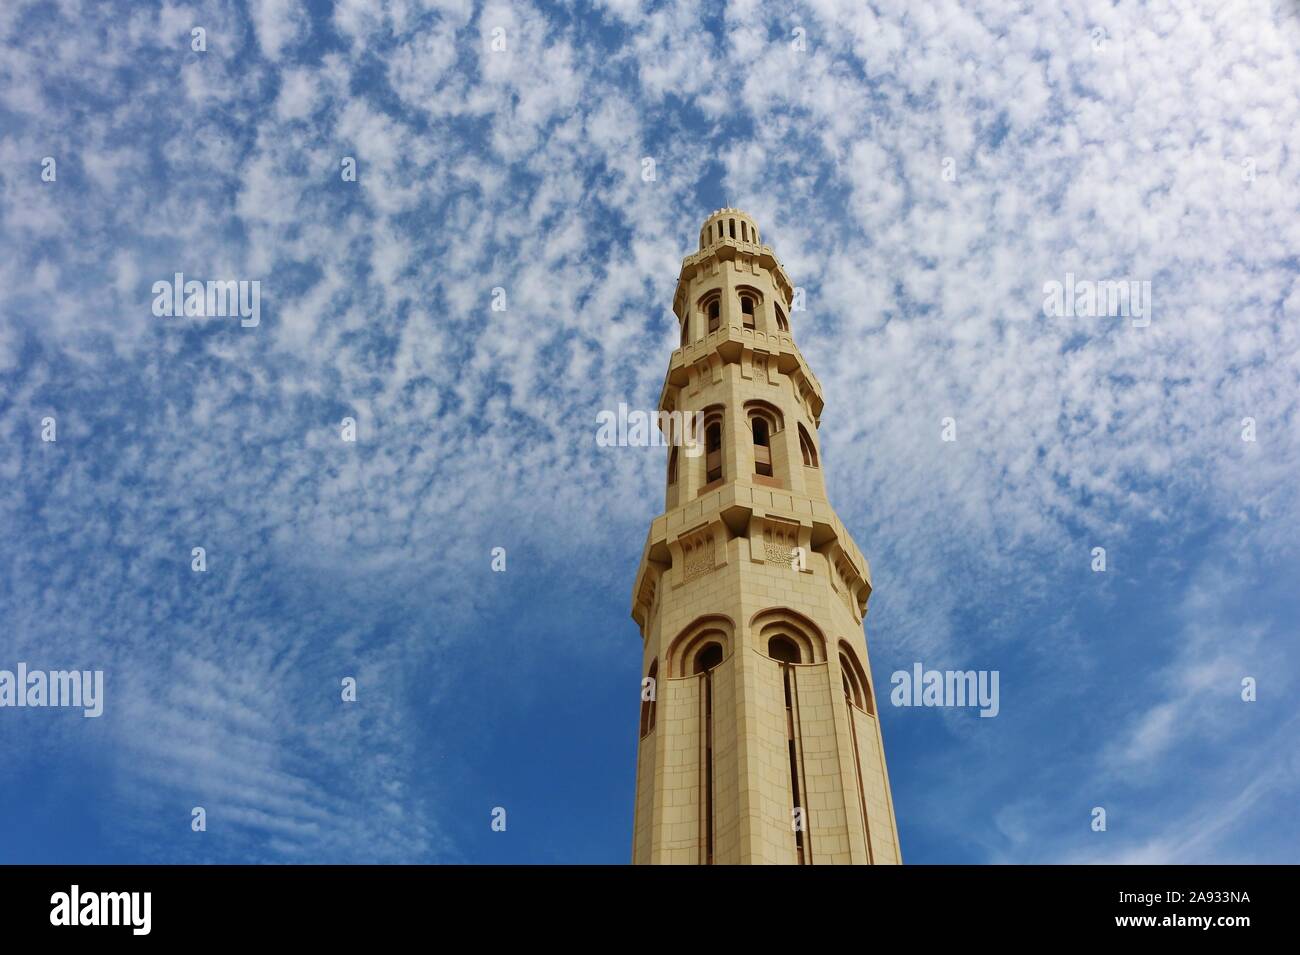 Sultan Qaboos grande moschea uno della torre alta della parete Case introno alla moschea Foto Stock